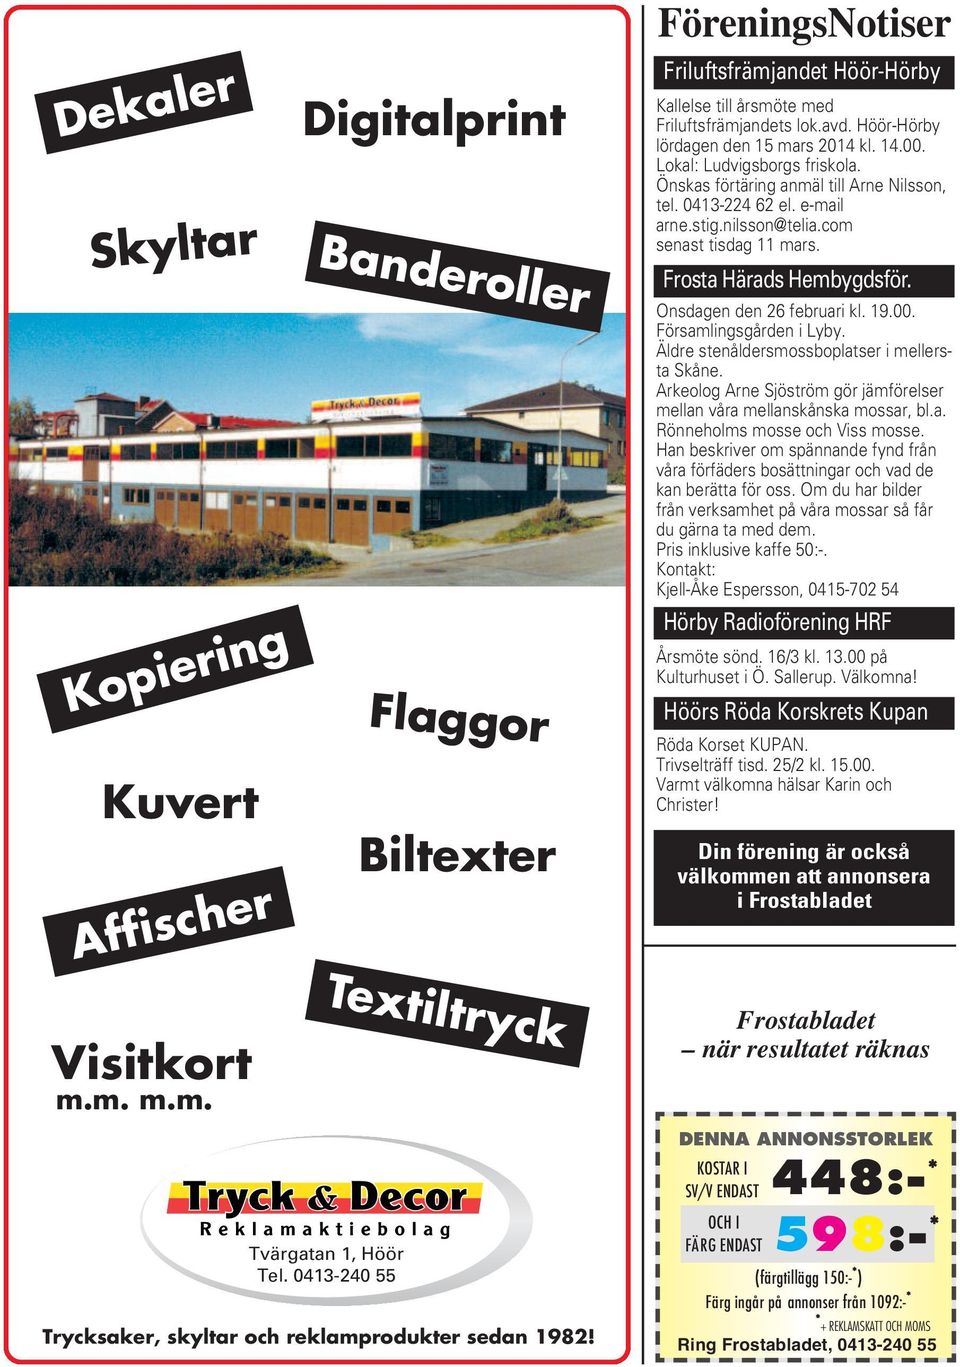 Frosta Härads Hembygdsför. Onsdagen den 26 februari kl. 19.00. Församlingsgården i Lyby. Äldre stenåldersmossboplatser i mellersta Skåne.